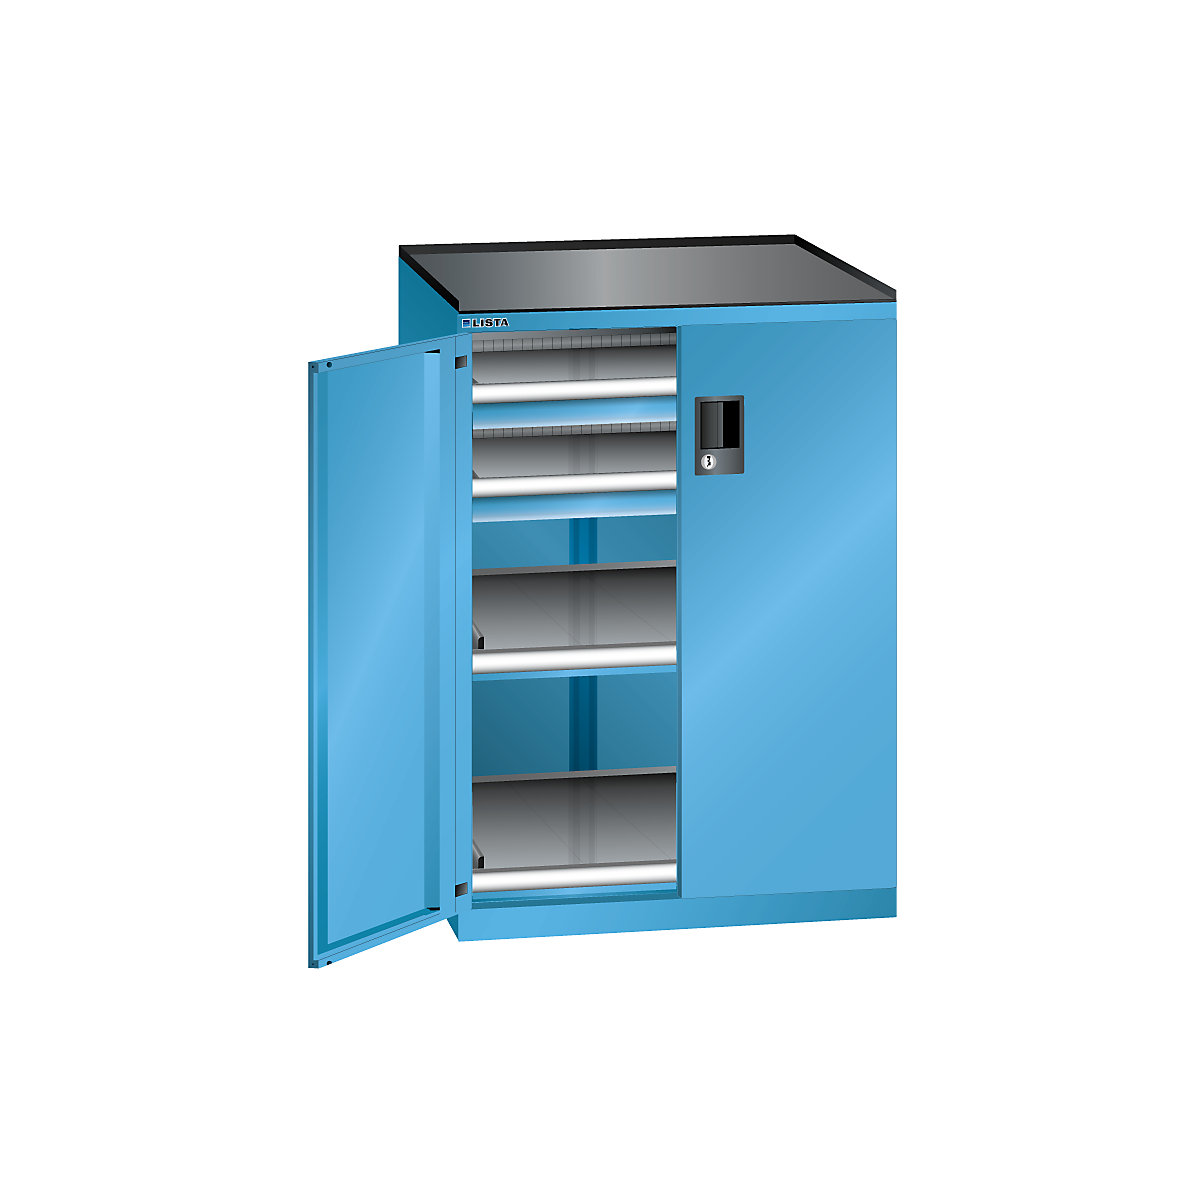 LISTA Schubladenschrank mit Flügeltüren, Höhe 1020 mm, 2 Böden, 2 Schubladen, Traglast 75 kg, lichtblau